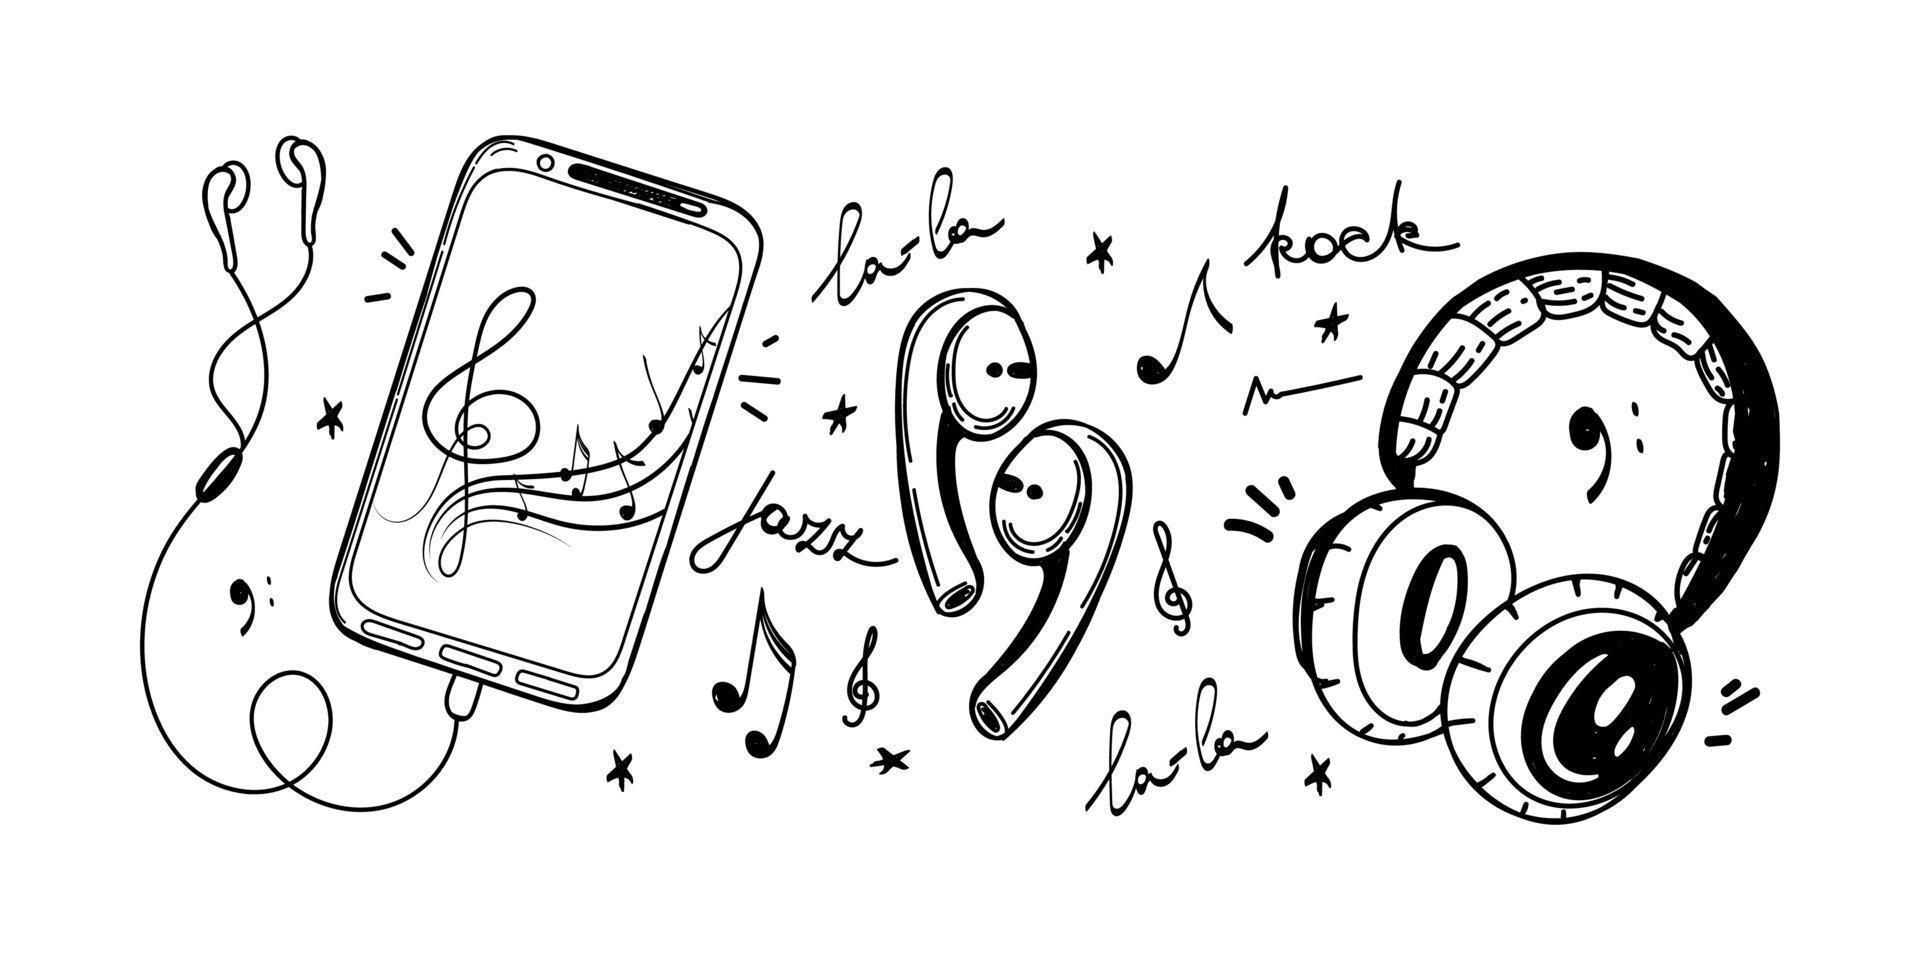 een set apparaten om naar muziek te luisteren, met de hand getekend in doodle-schetsstijl. smartphone met koptelefoon, grote dj koptelefoon en kleine draadloze koptelefoon. met de hand getekende muziekgenres. geïsoleerd element. vector